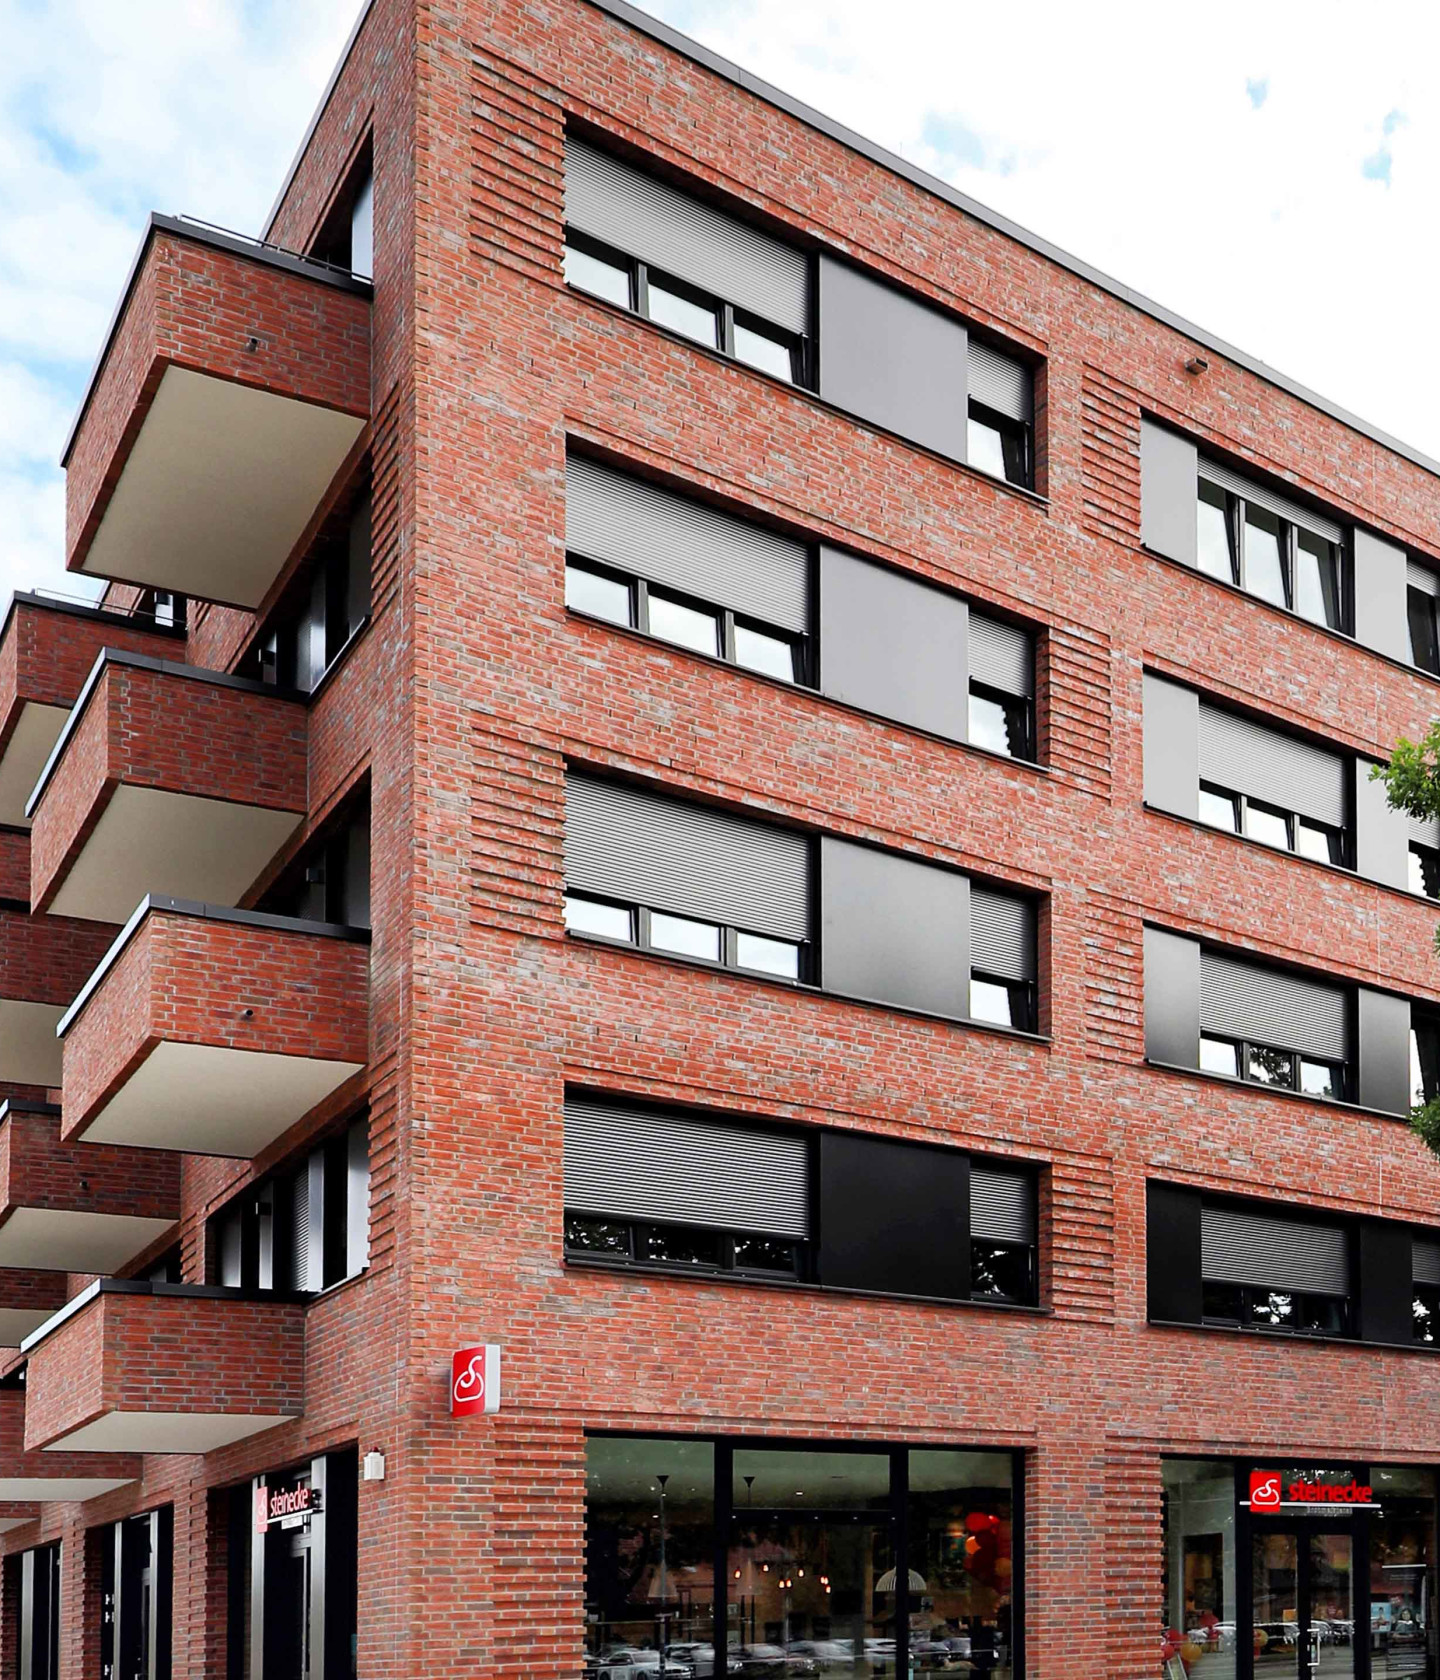 Bild: Wohngebäude Pod I Be green mit Balkonen und Ladenzeile